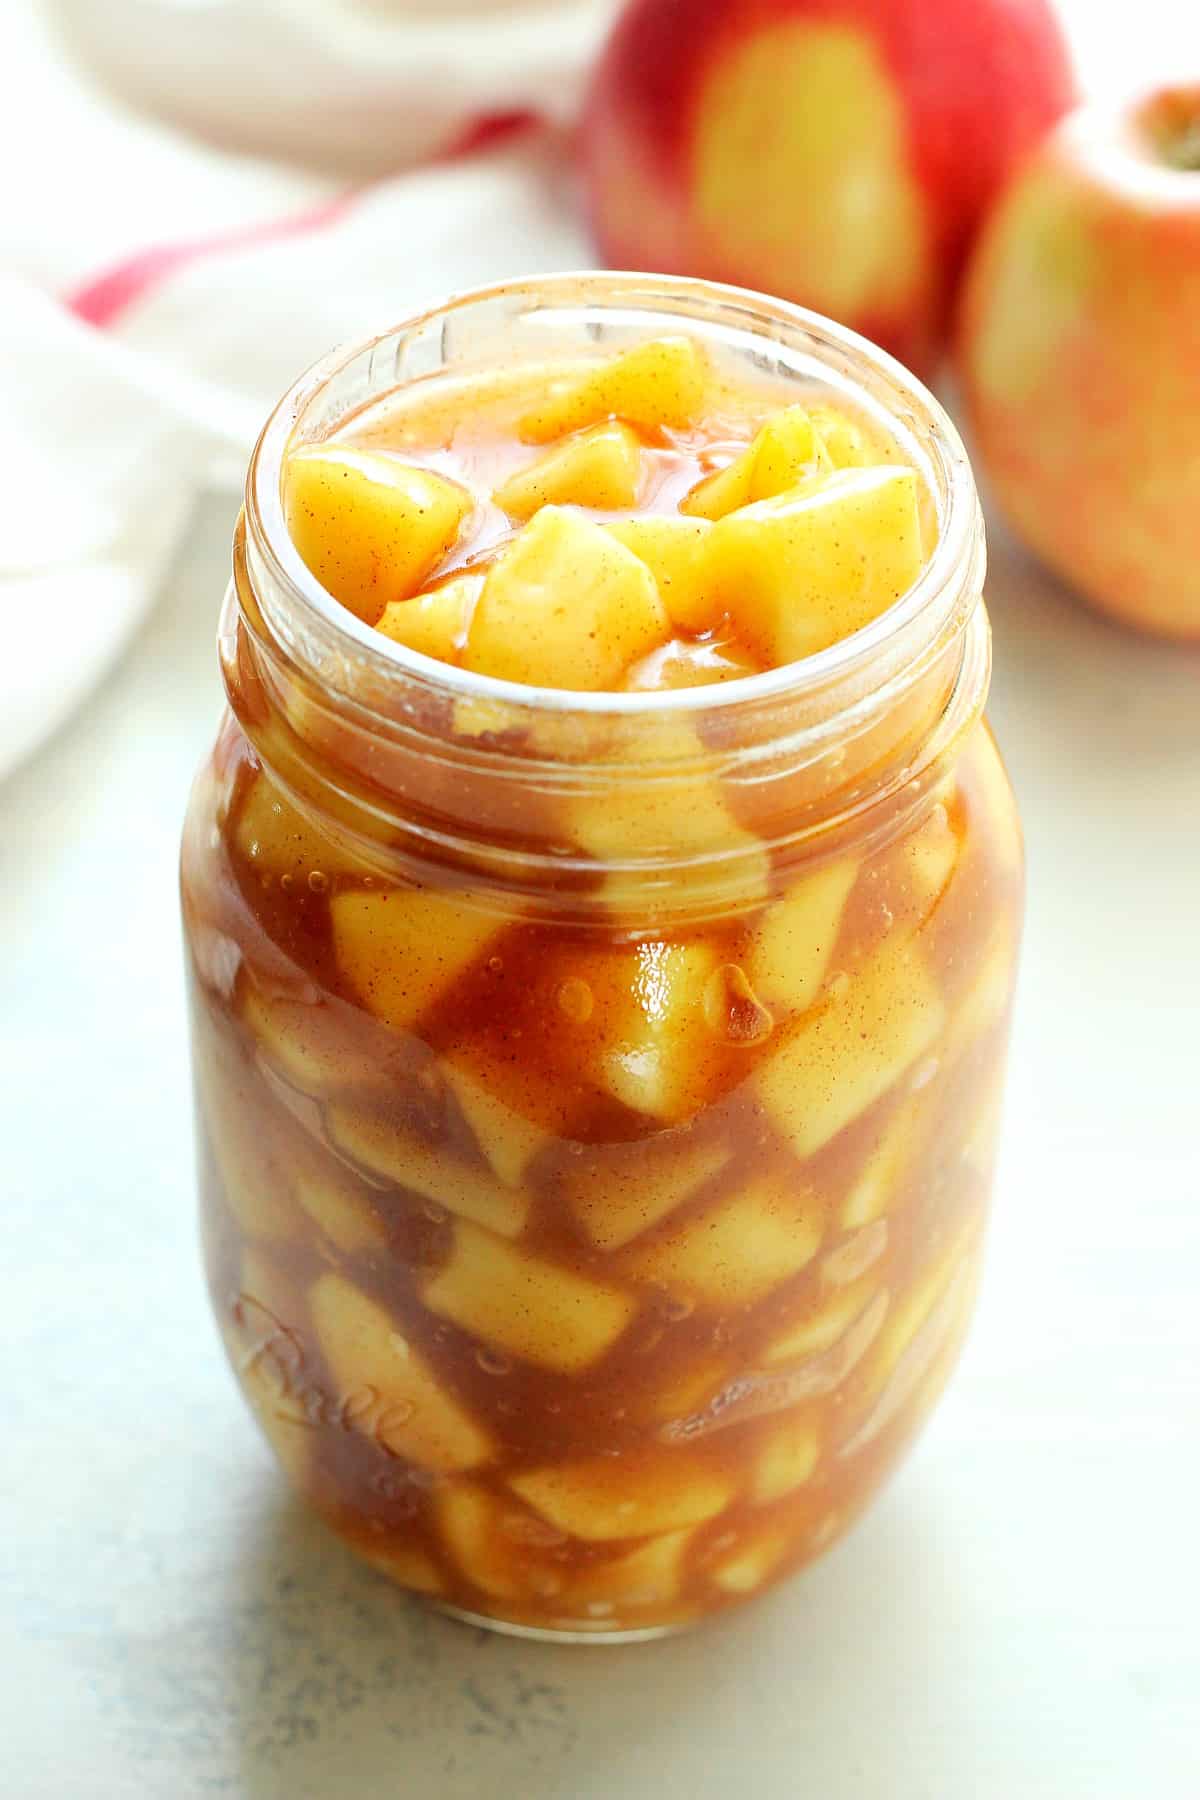 Apple pie filling in a glass jar.